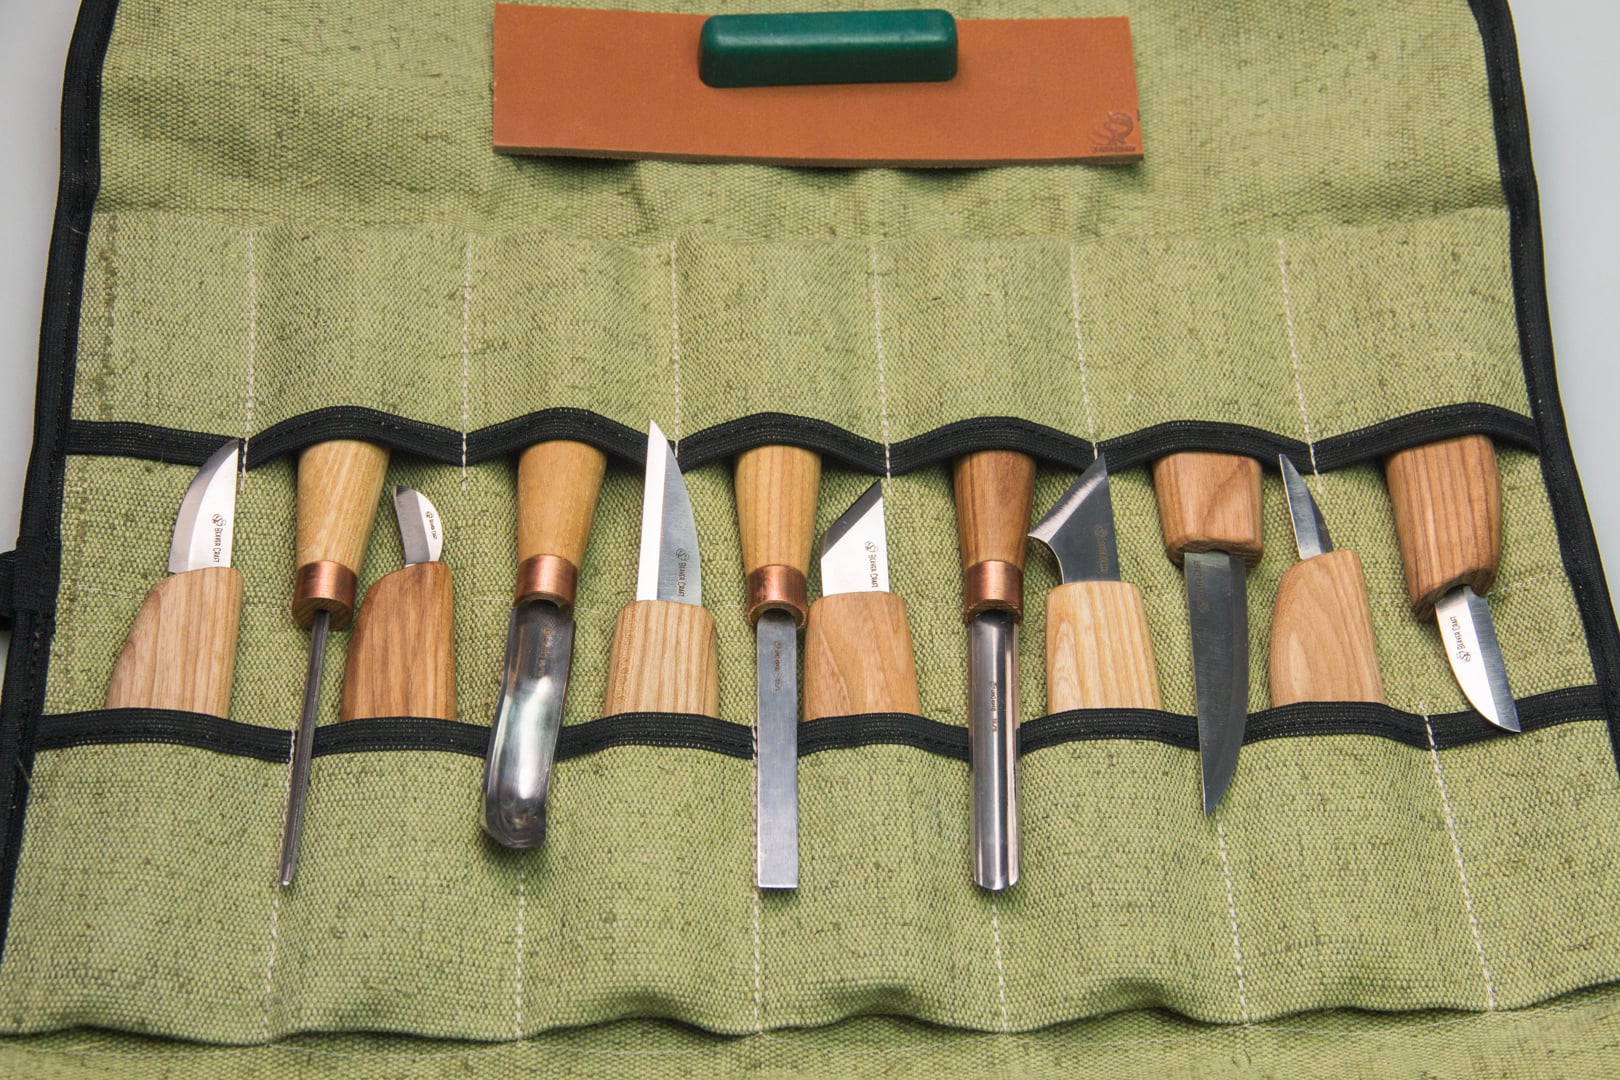 S50 – Holzschnitzerei-Set mit 12 Messern